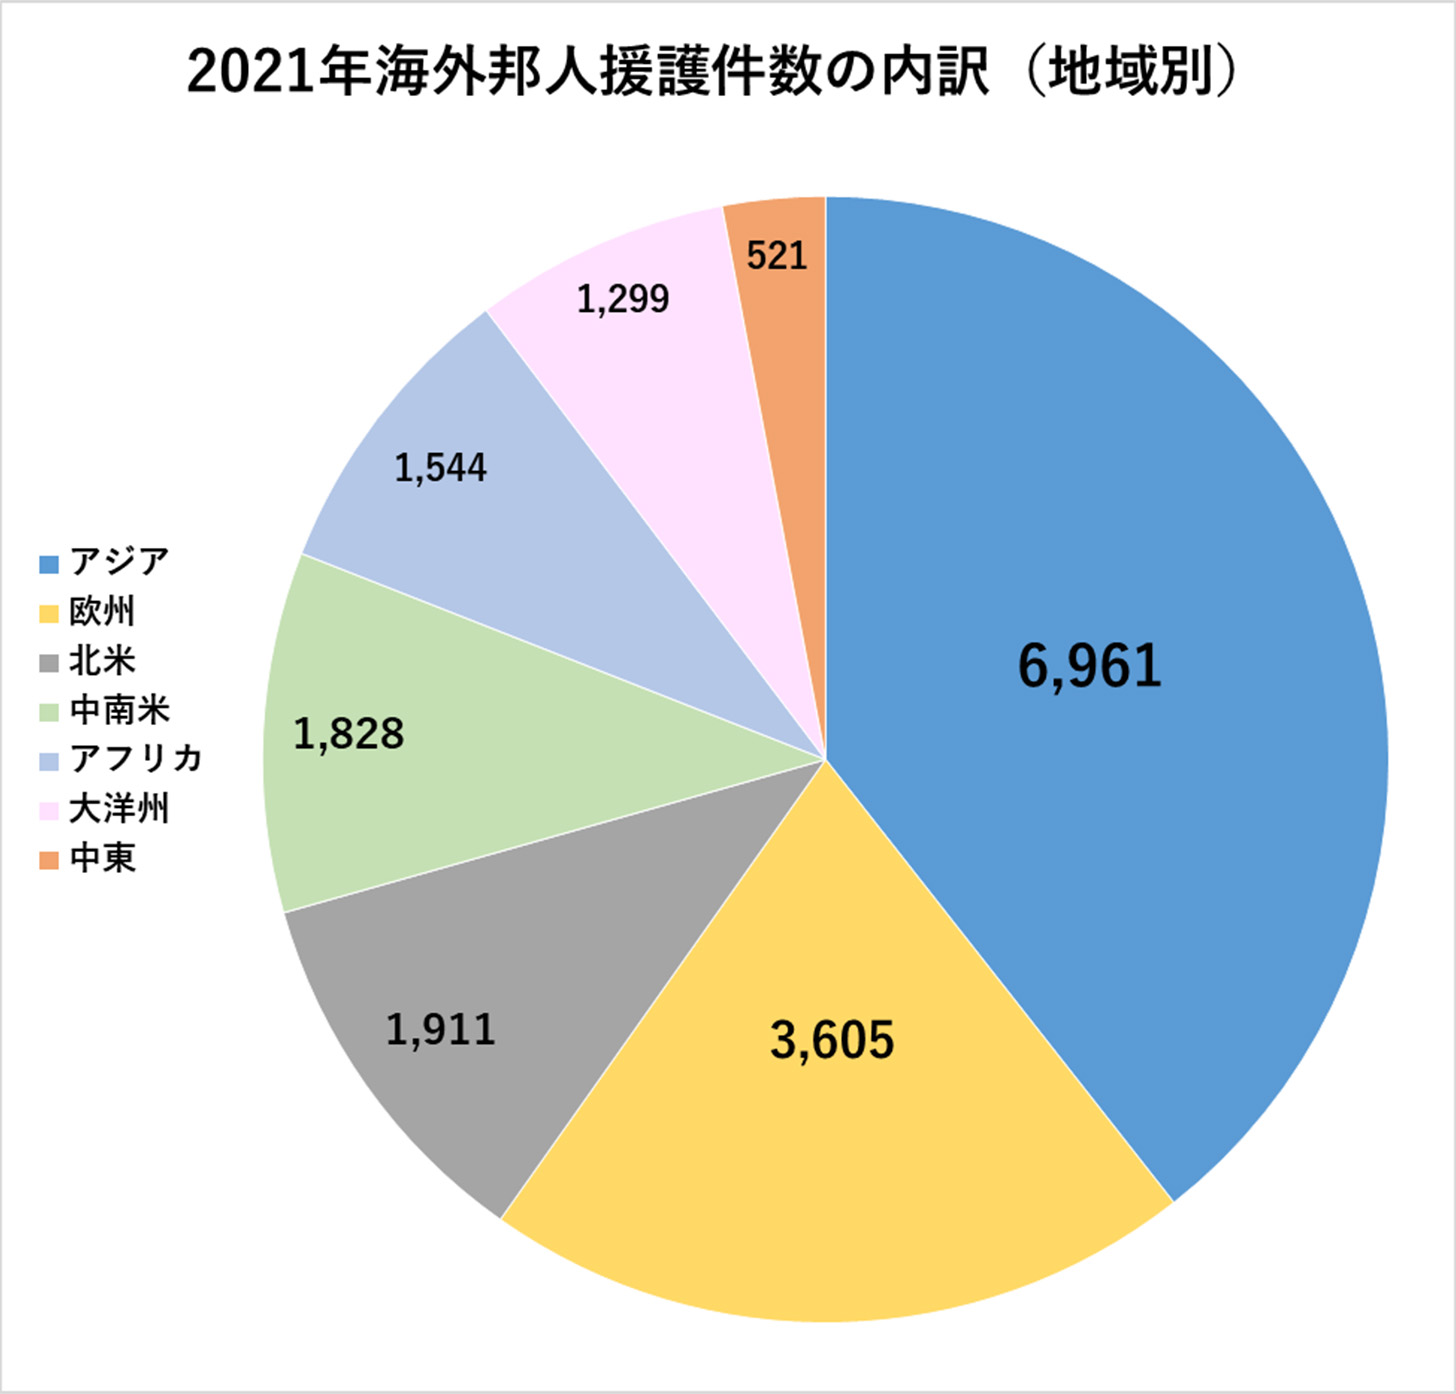 2021年海外邦人援護件数（地域別）の円グラフ